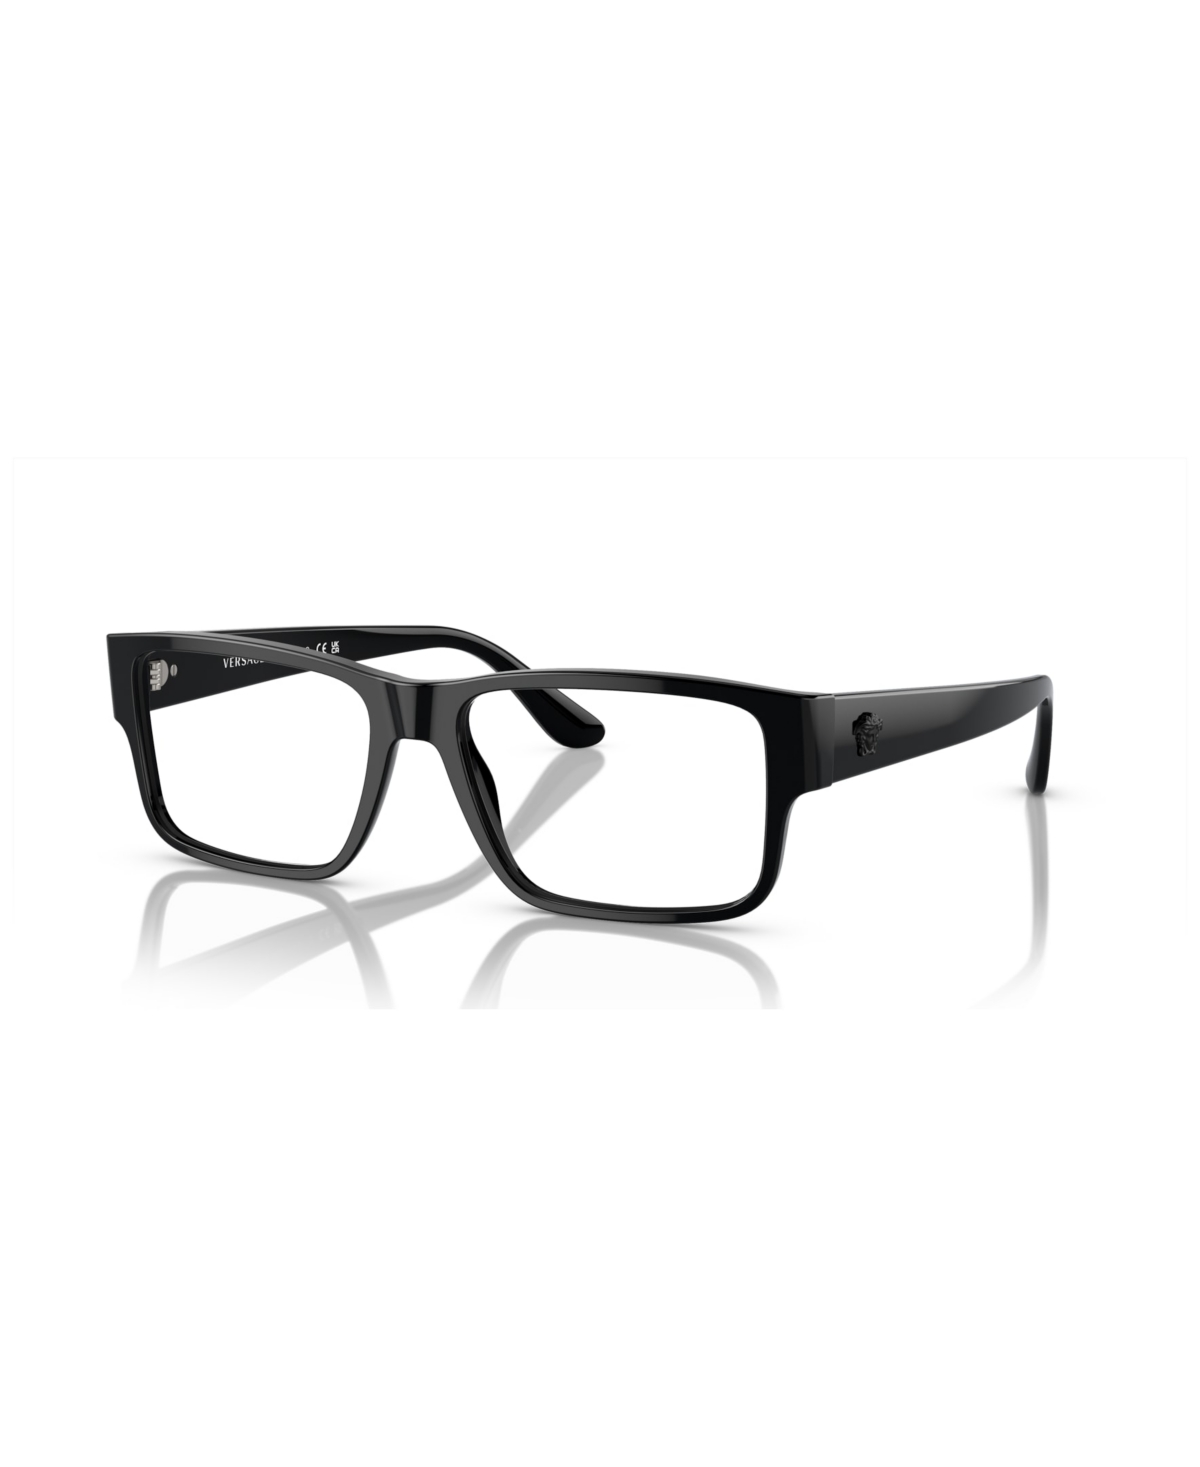 Men's Eyeglasses, VE3342 - Black